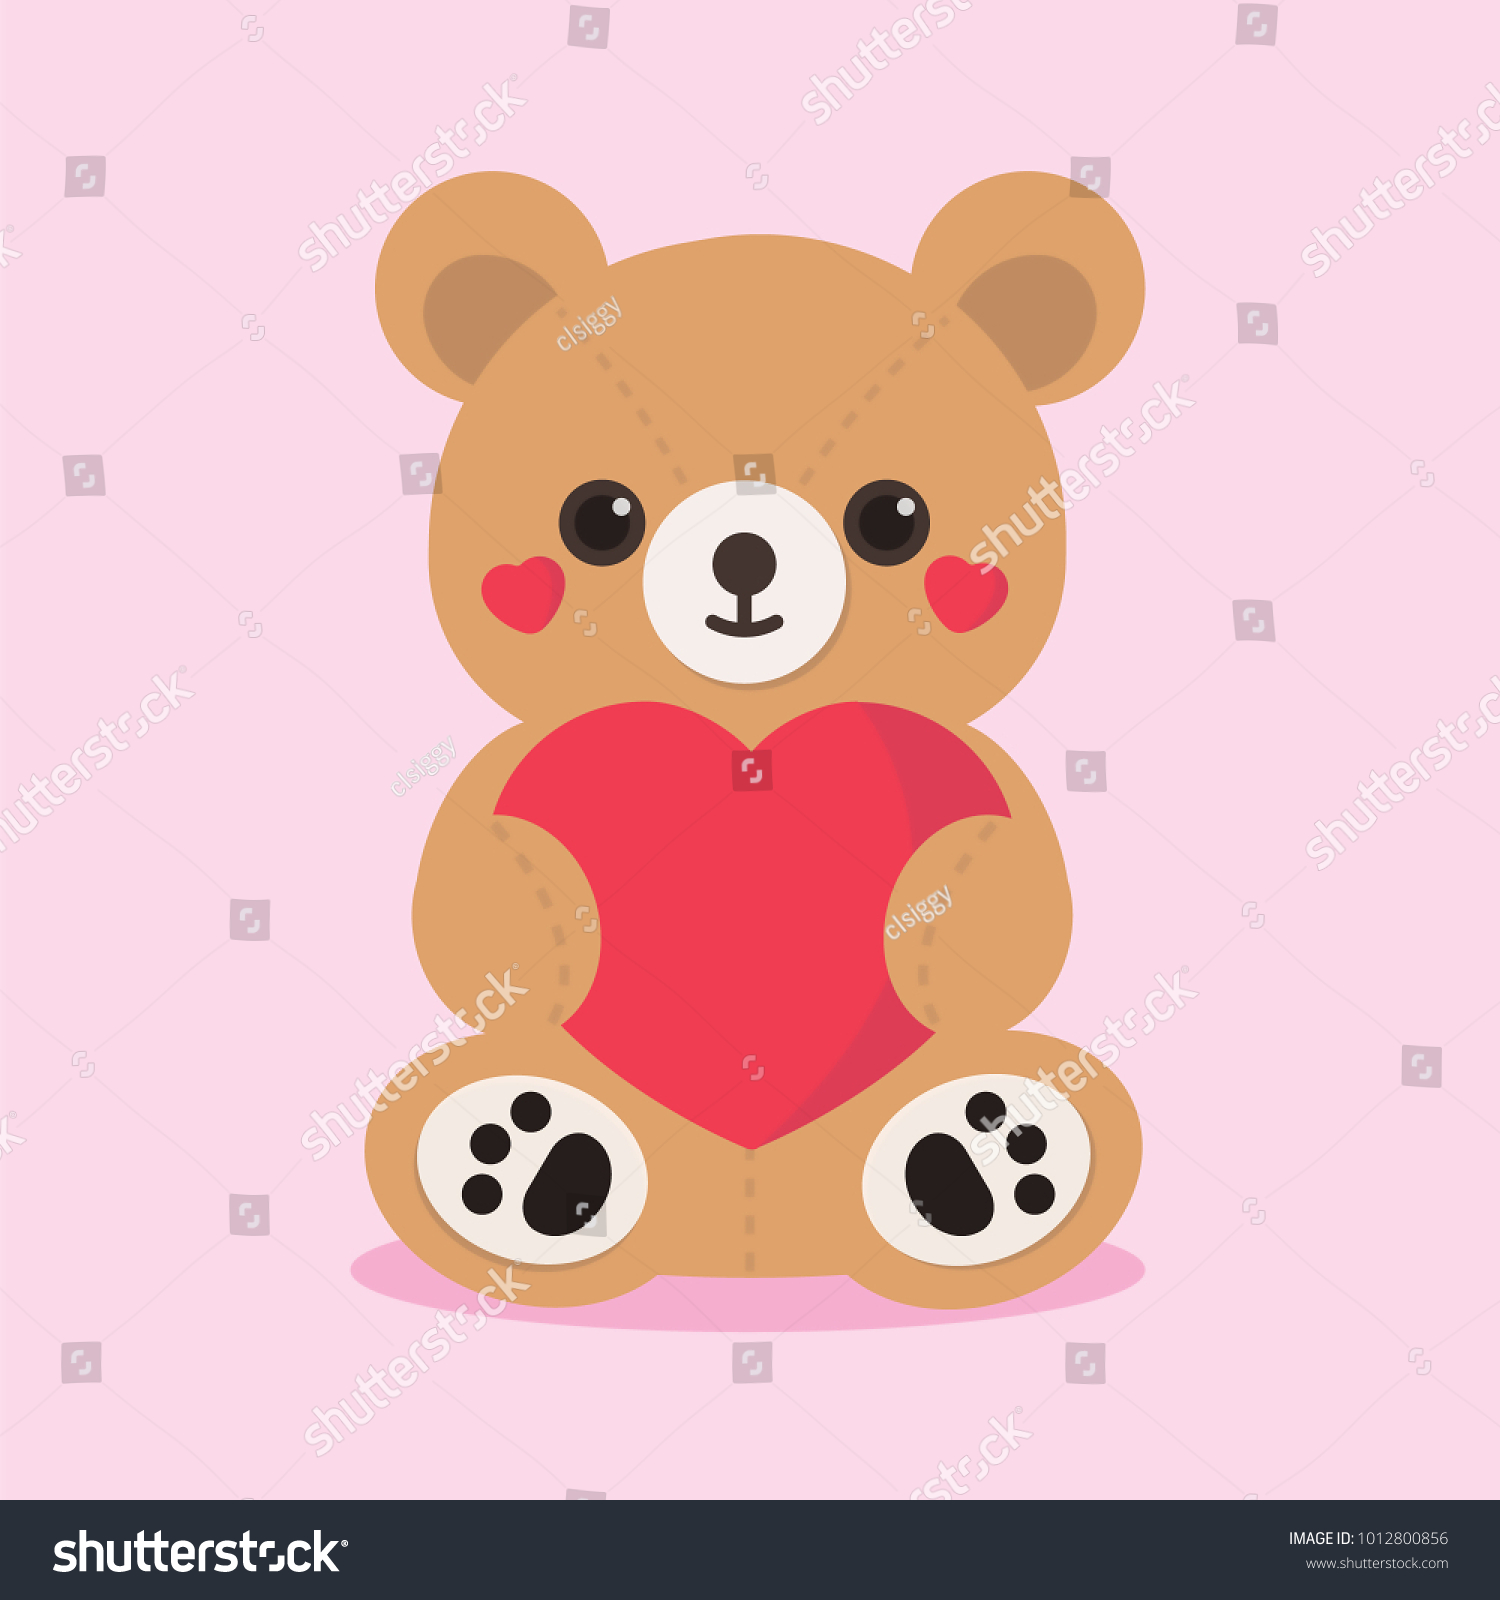 teddy holding heart